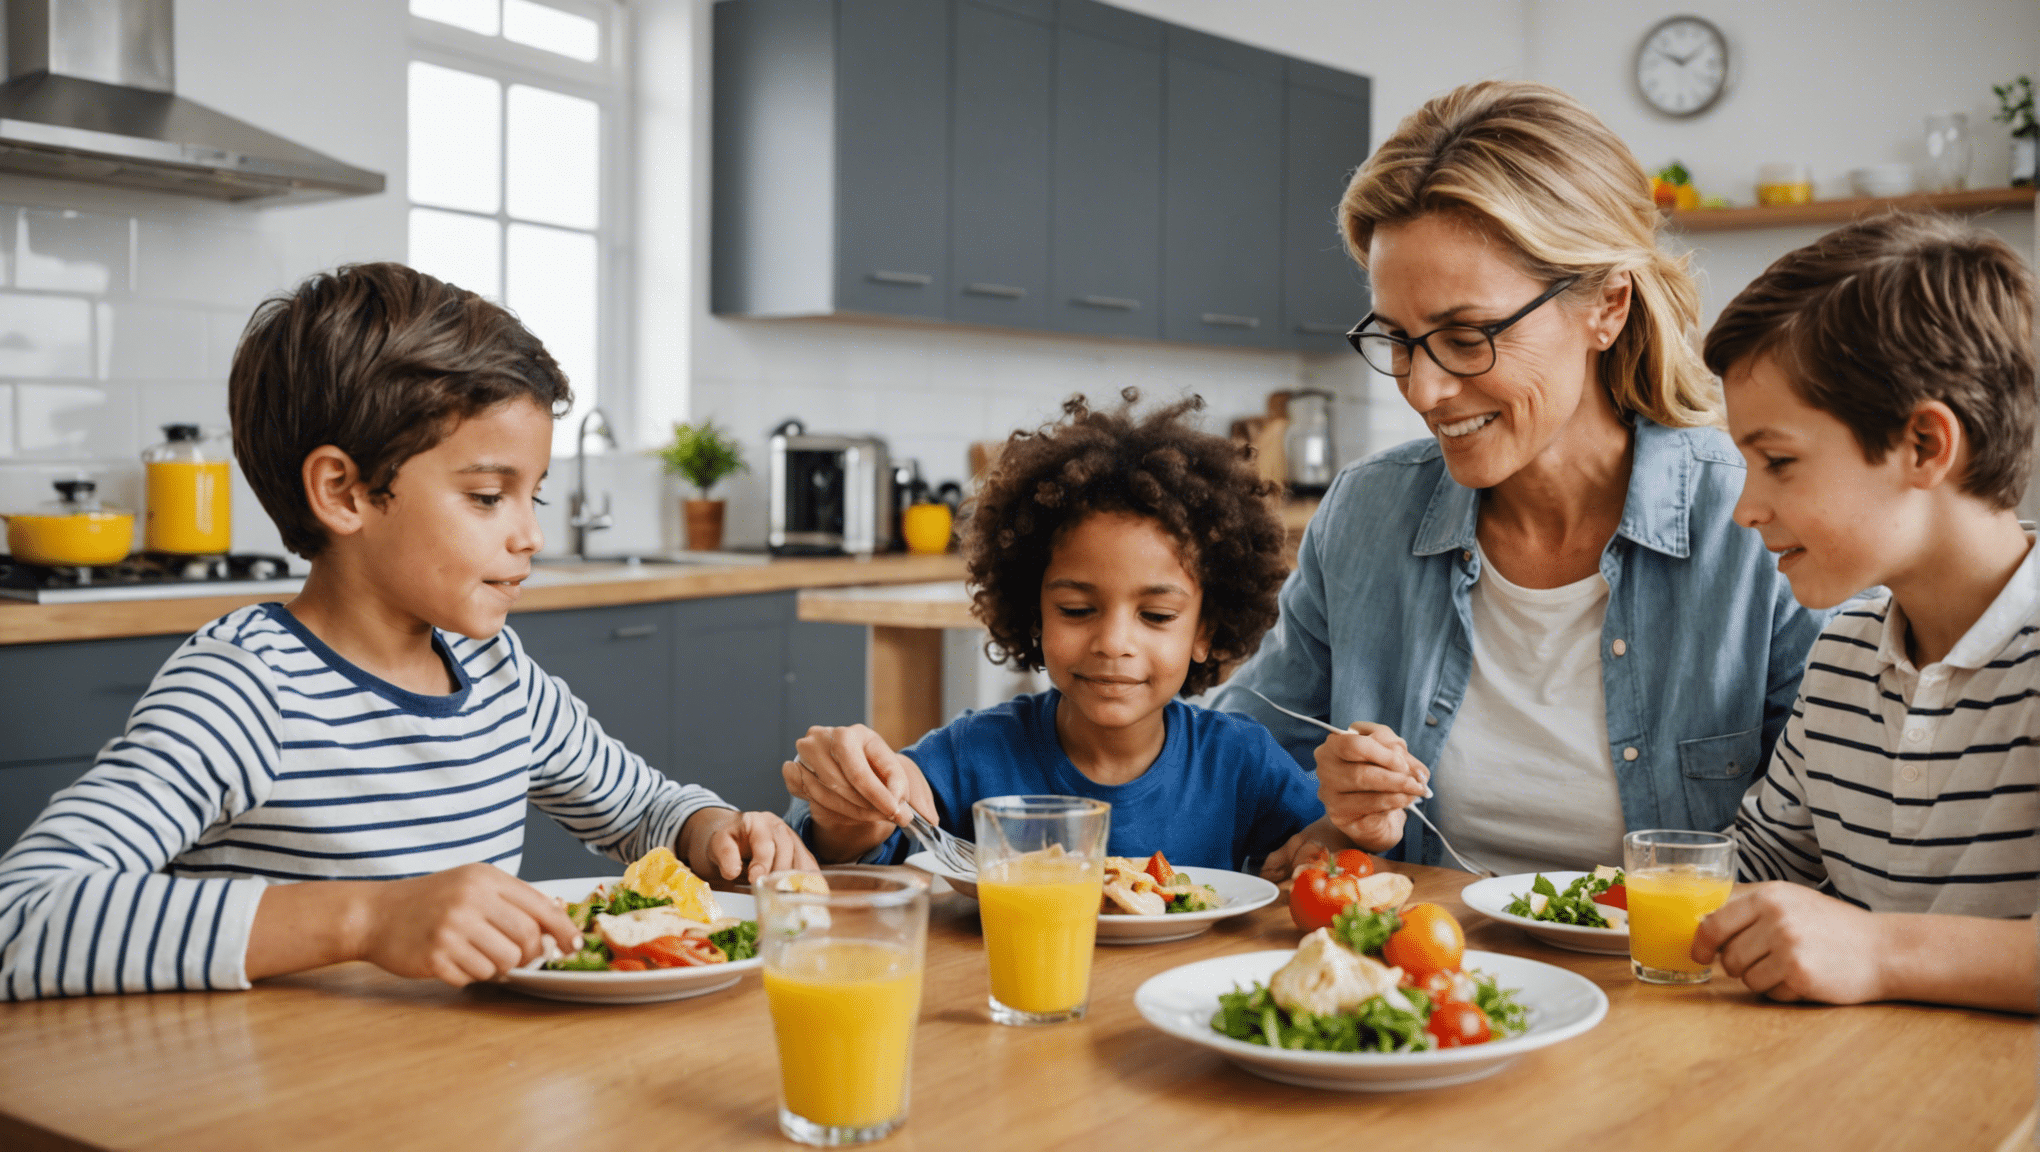 découvrez nos conseils pratiques et nos recettes simples pour préparer des repas sains et équilibrés qui plairont à toute la famille. des idées faciles à réaliser pour une alimentation saine au quotidien.